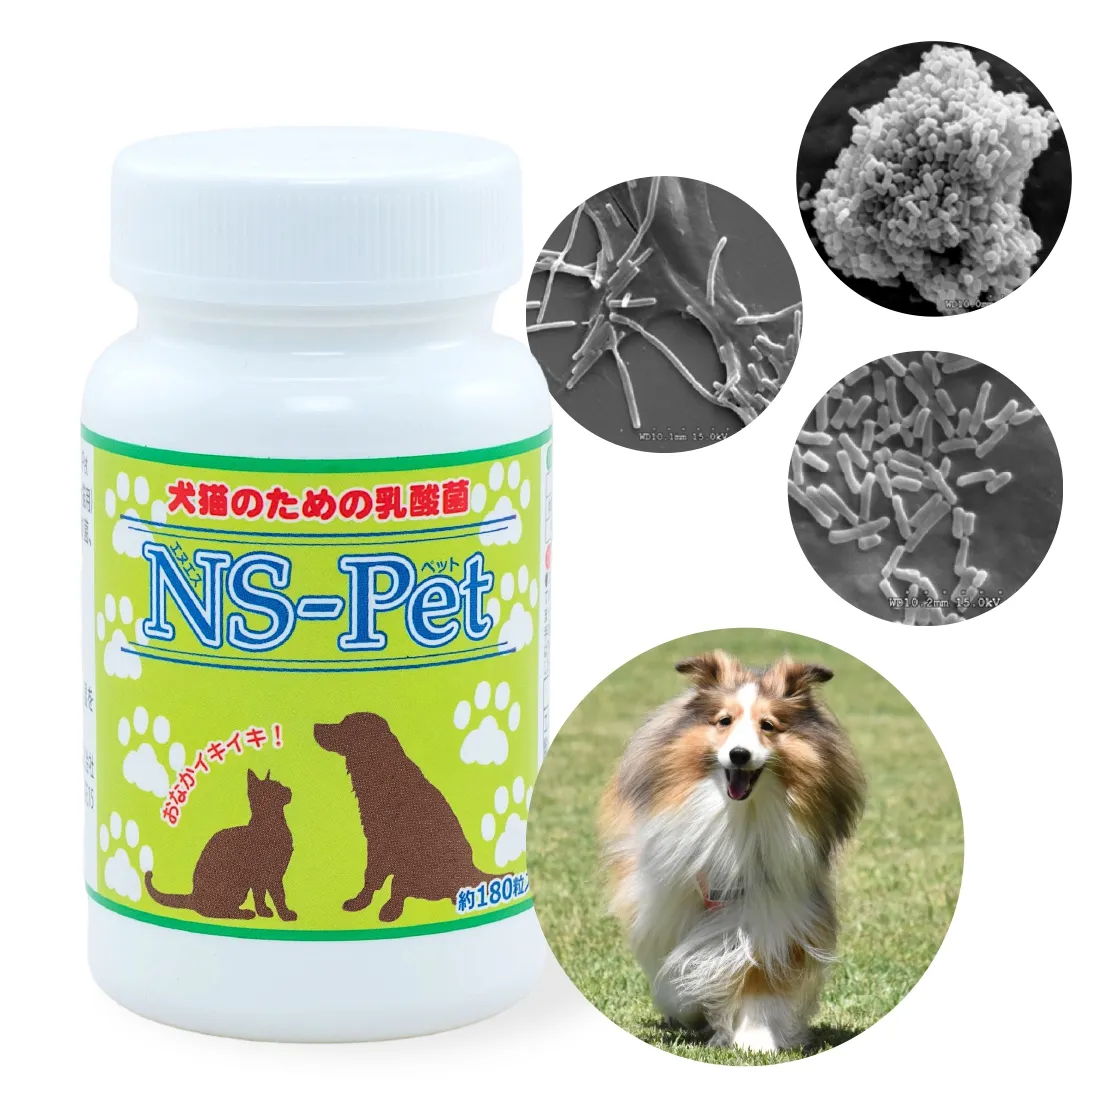 แบคทีเรียกรดแลคติกสำหรับสุนัขและแมว NS-Pet "อาหารเสริมสำหรับสุนัขและแมว